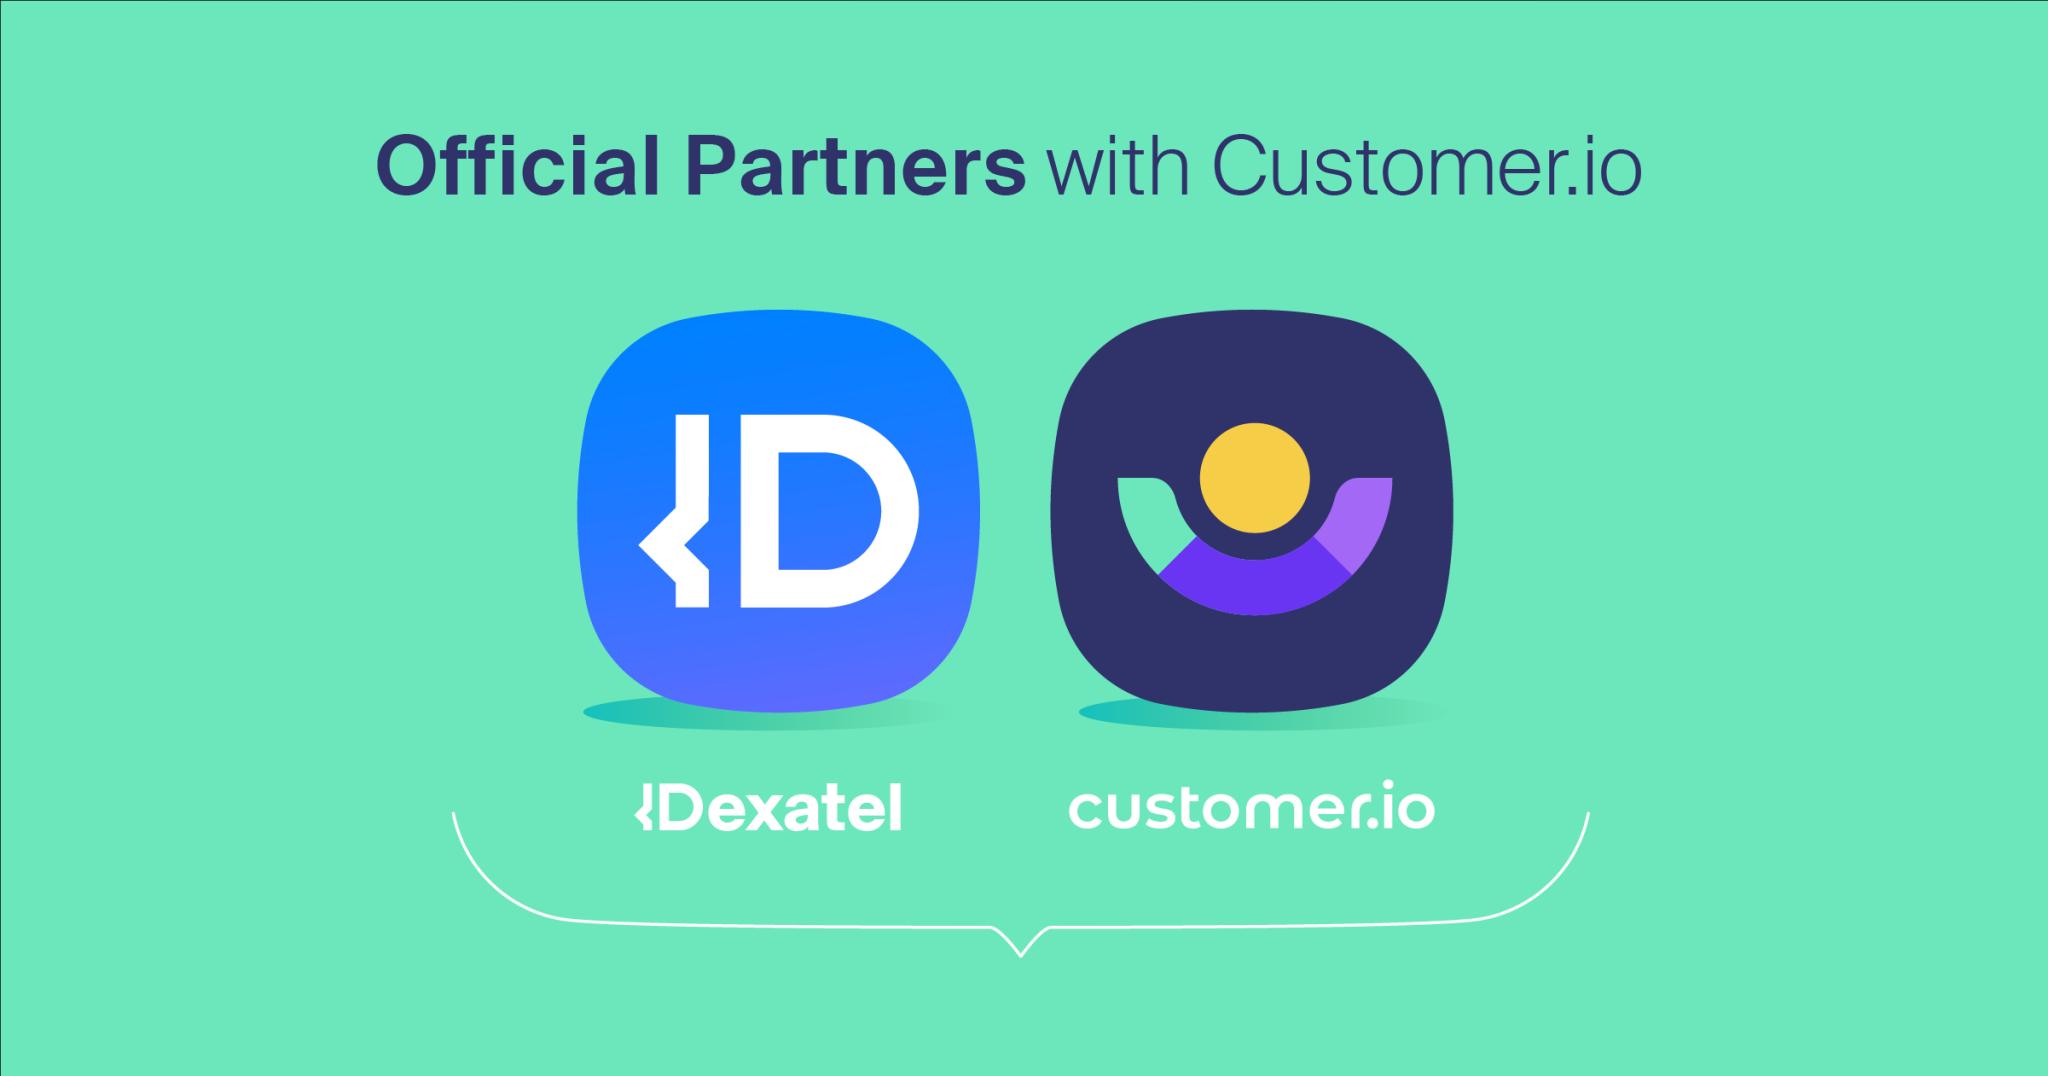 Dexatel Customer.io Partnership